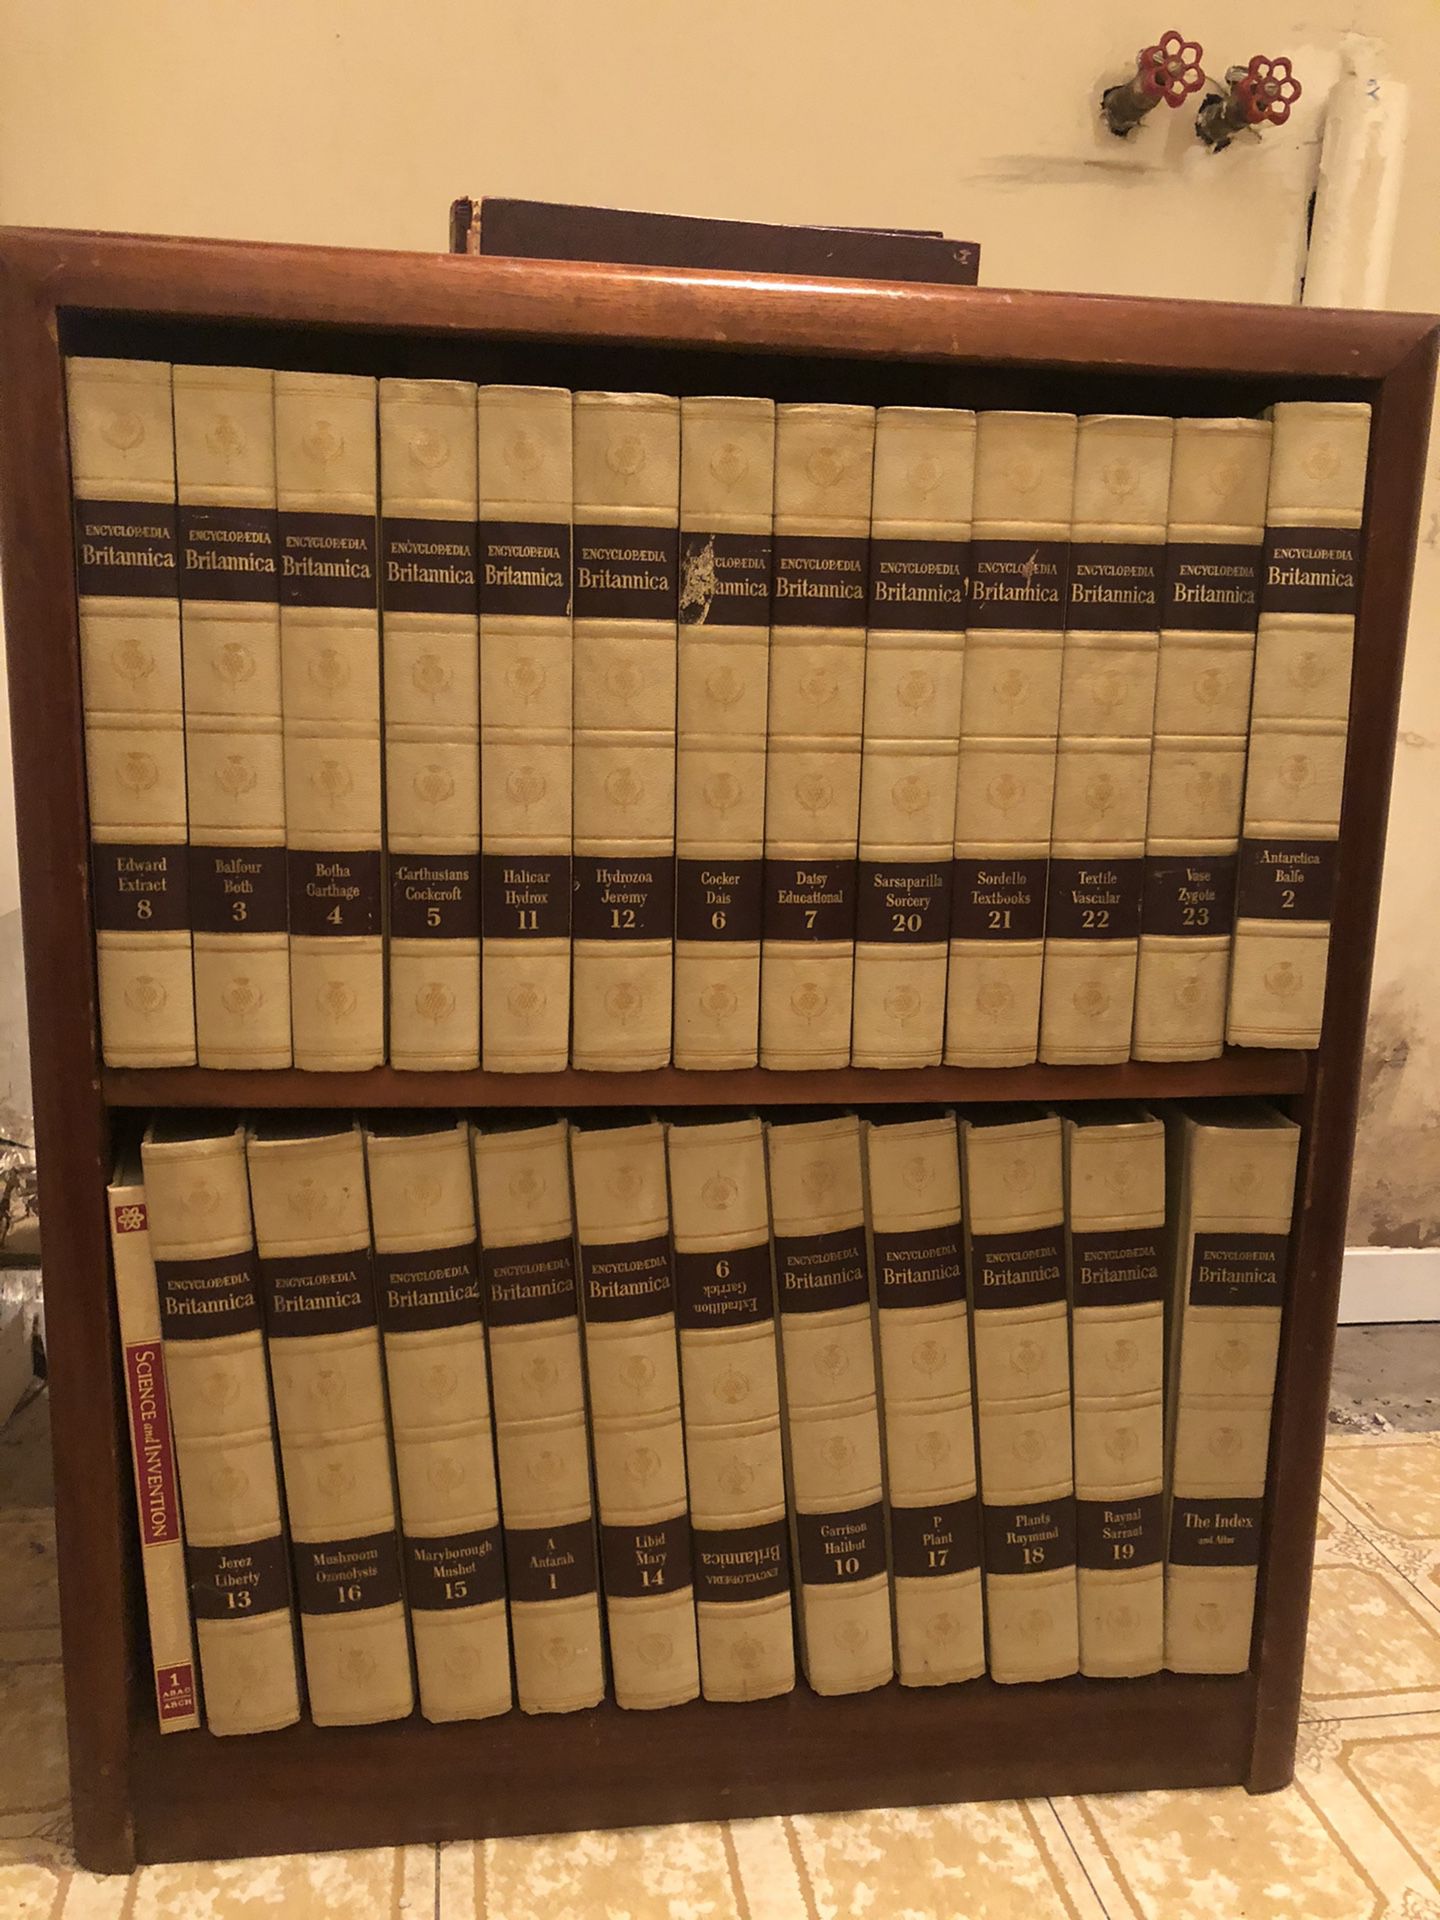 1964 Encyclopedia Britannica (1-23)